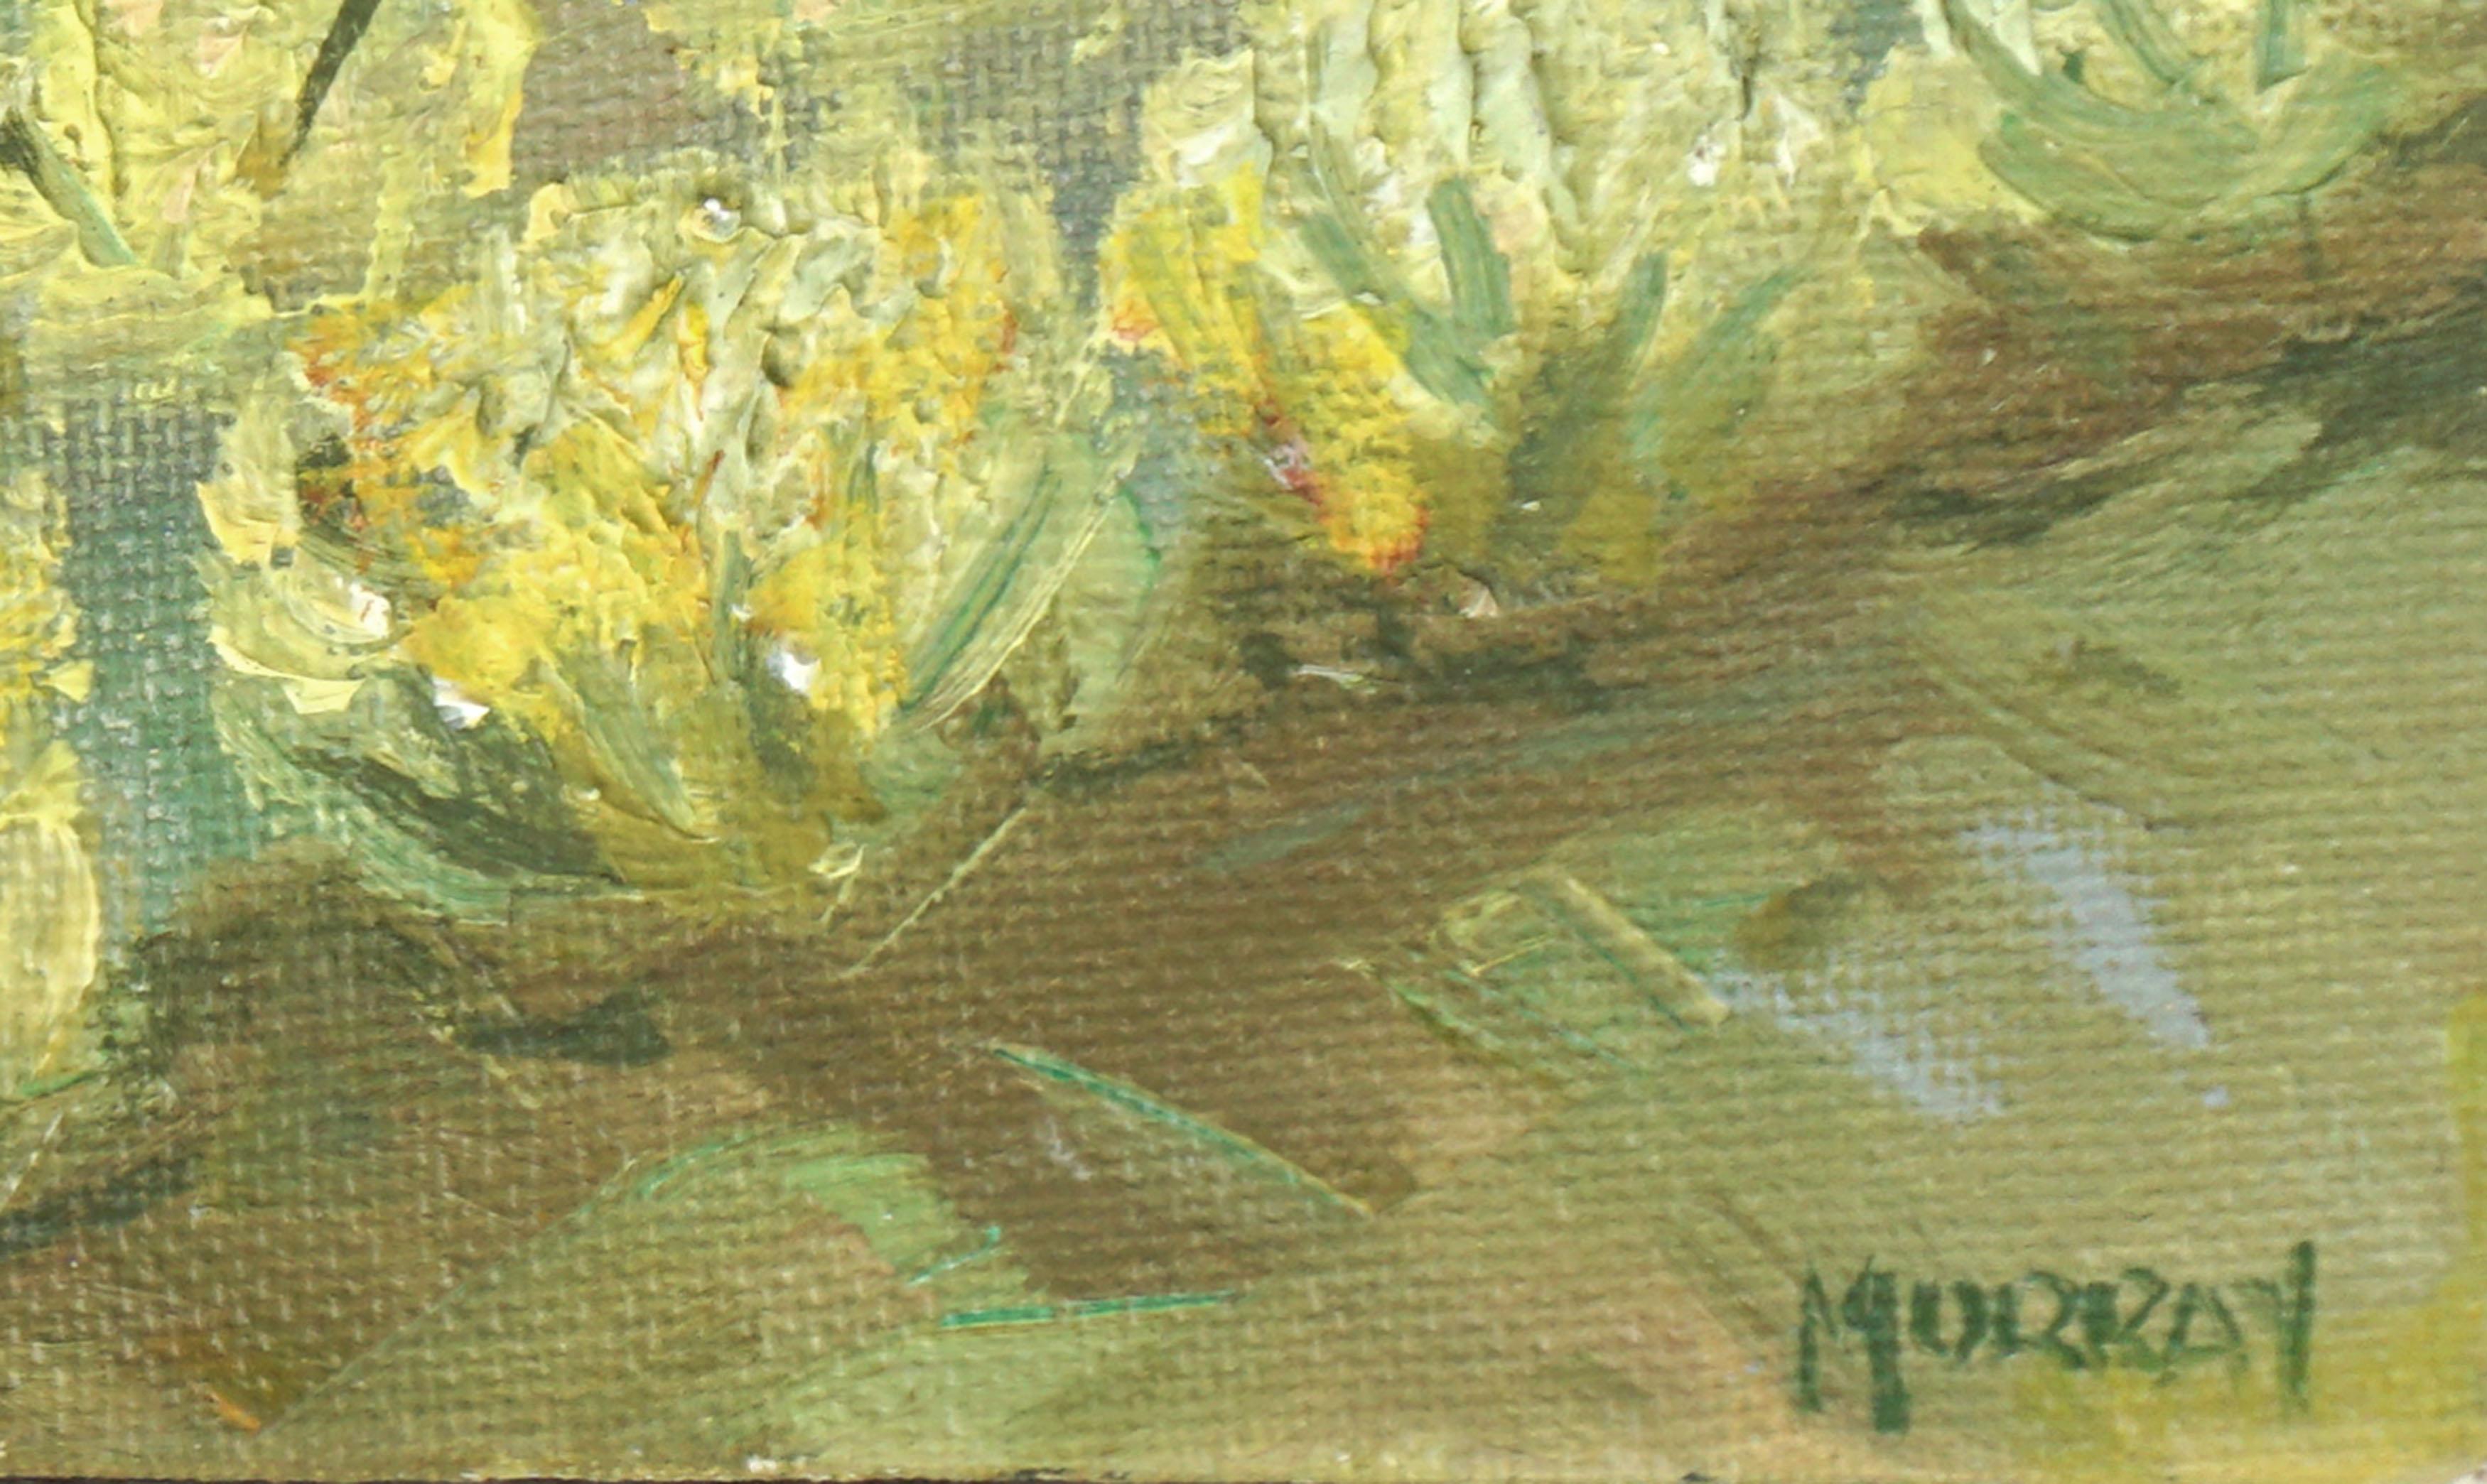 Santa Barbara Vineyards - Mustard Flowers in Bloom Landscape - Painting by Kathleen Murray